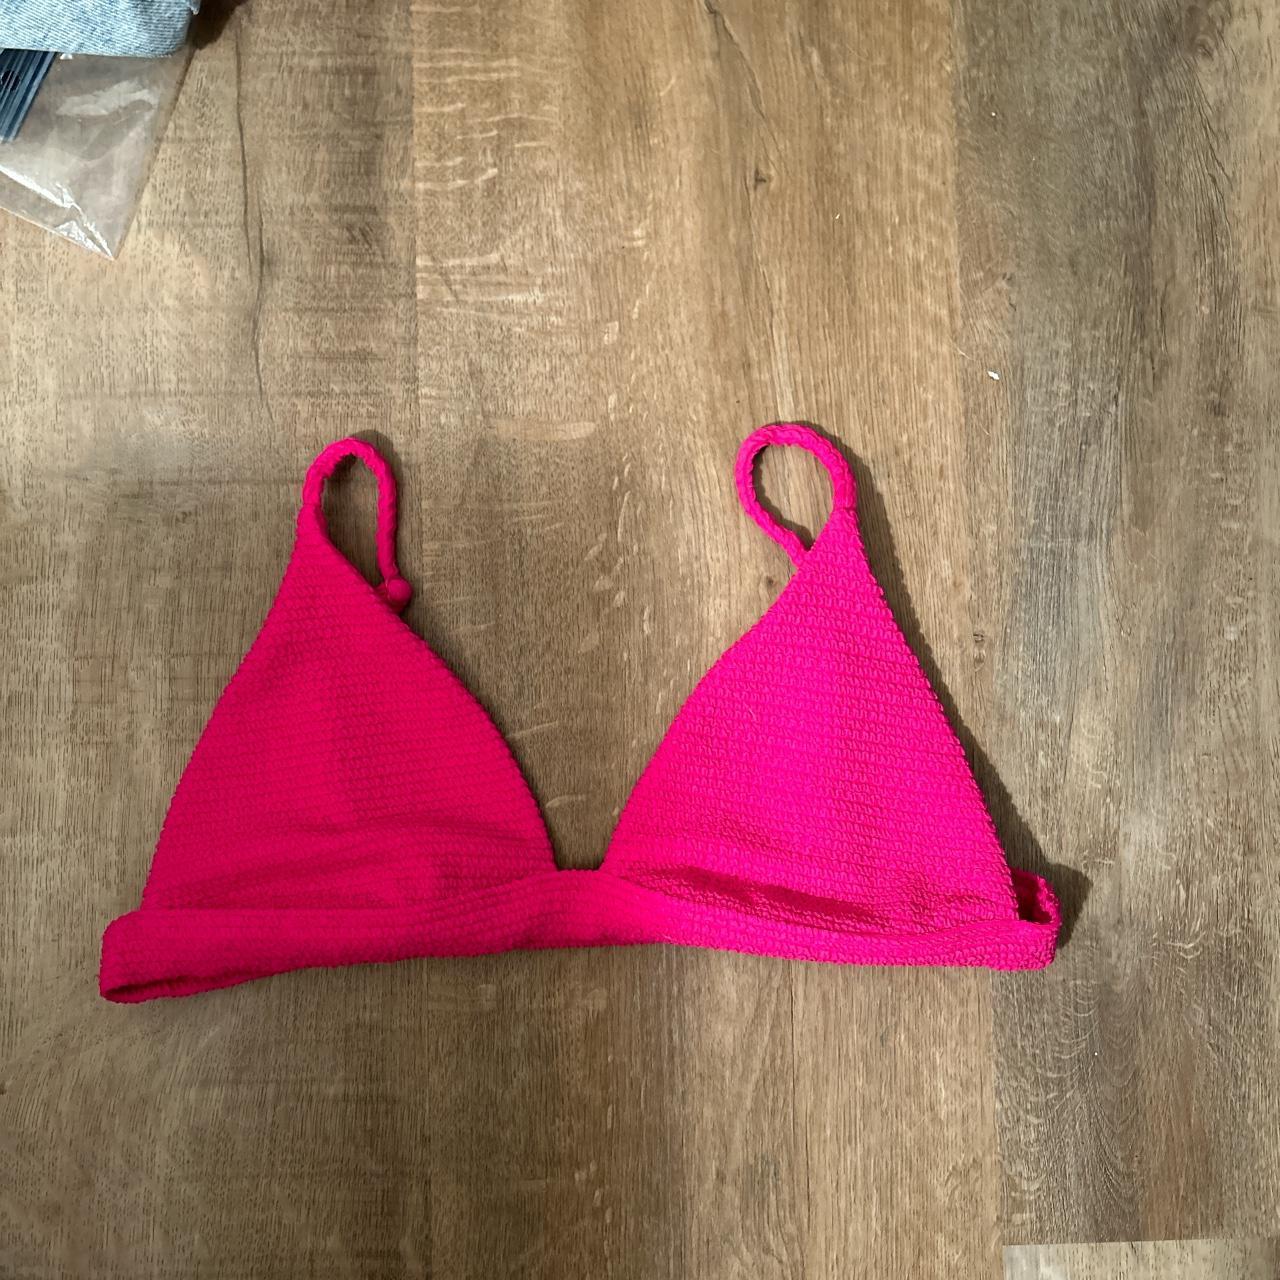 PacSun Women's Pink Bikinis-and-tankini-sets (3)